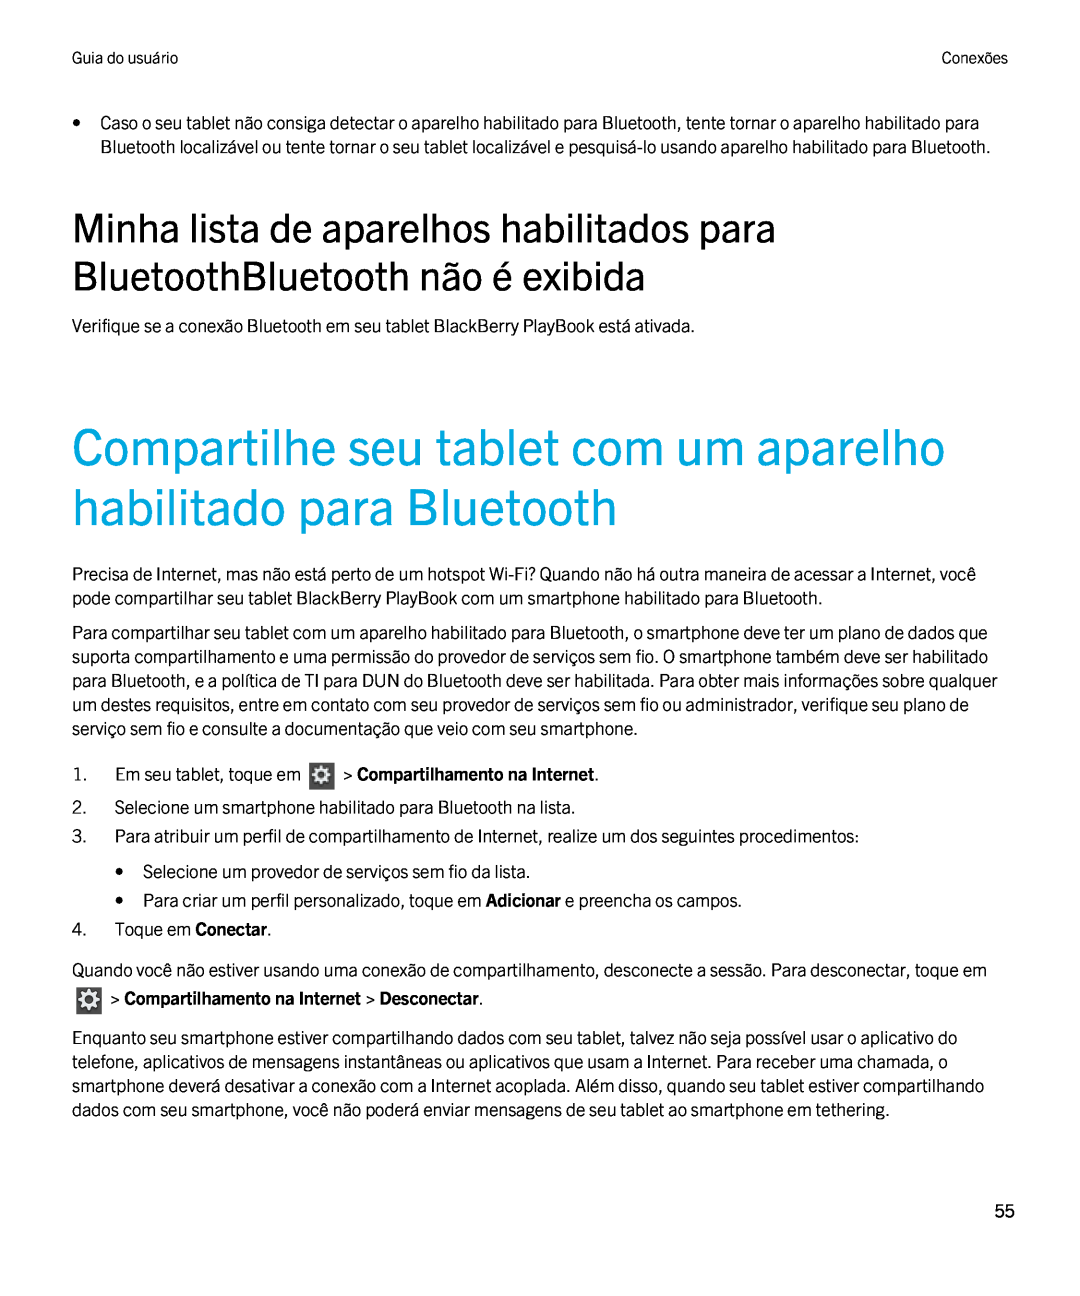 Blackberry 2.0.1 manual Compartilhe seu tablet com um aparelho habilitado para Bluetooth 